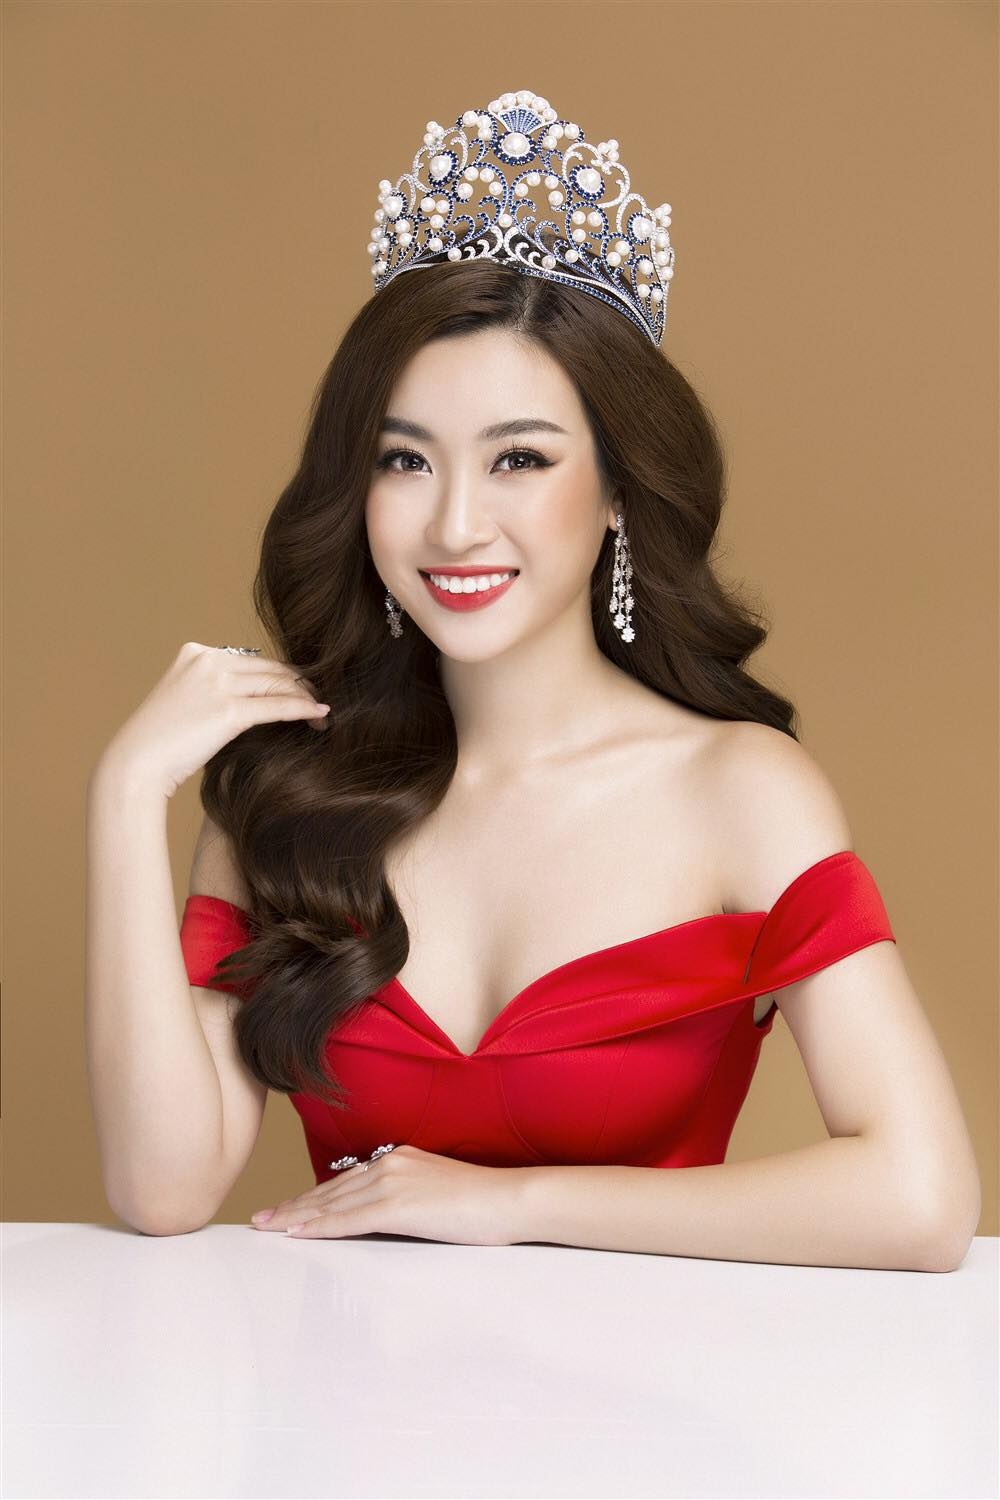 Miss Tourism Thái Lan bị tố đạo nhái vương miện của Đỗ Mỹ Linh, netizen tràn vào fanpage để khủng bố - Ảnh 6.